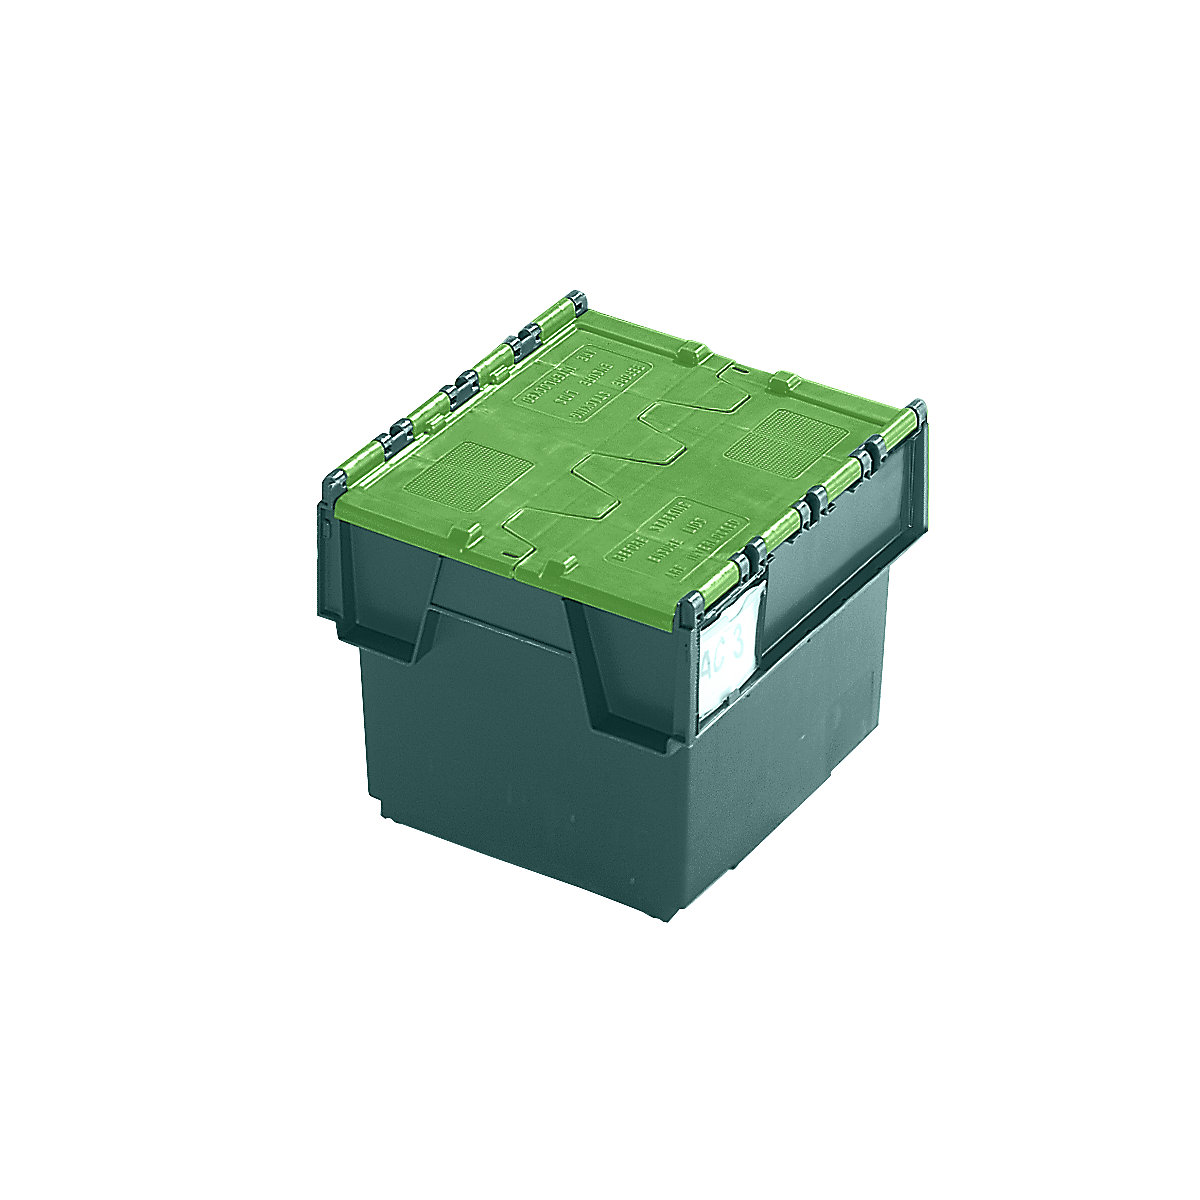 Pojemnik wielokrotnego użytku do ustawiania w stos ze składaną pokrywą, poj. 20 l, dł. x szer. x wys. 400 x 300 x 252 mm, zielony